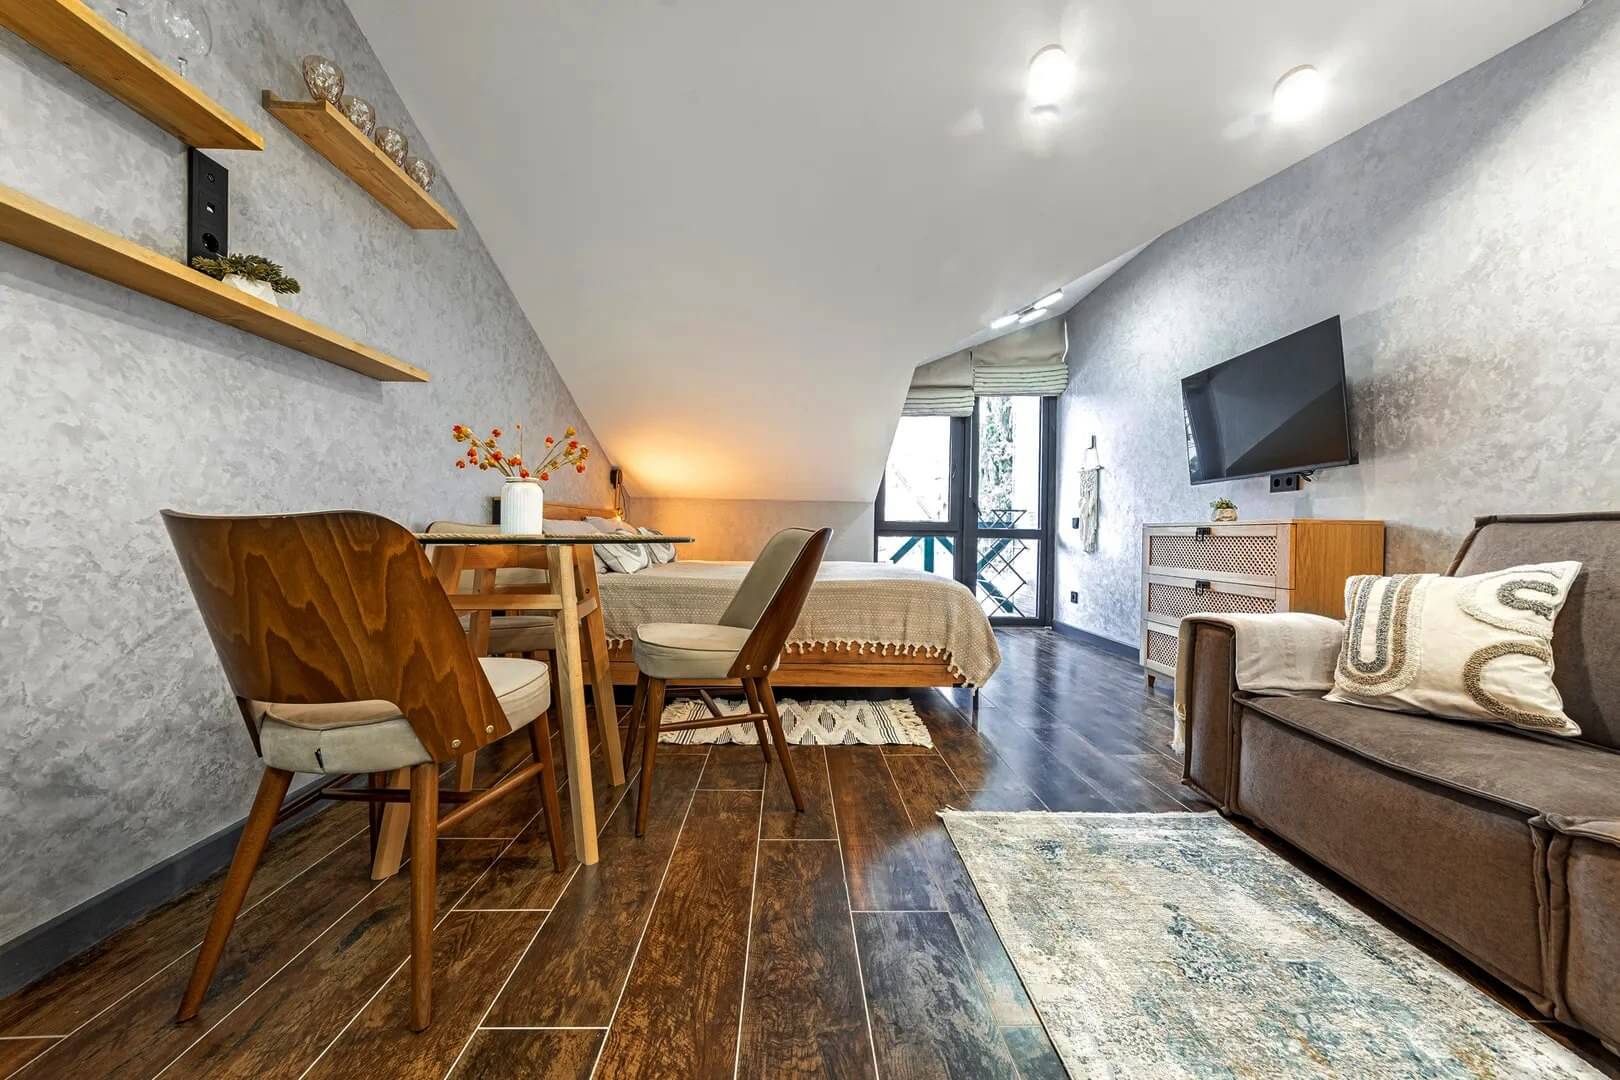 Панорама комнаты: диван с кухонным столом, кровать и телевизор на стене.